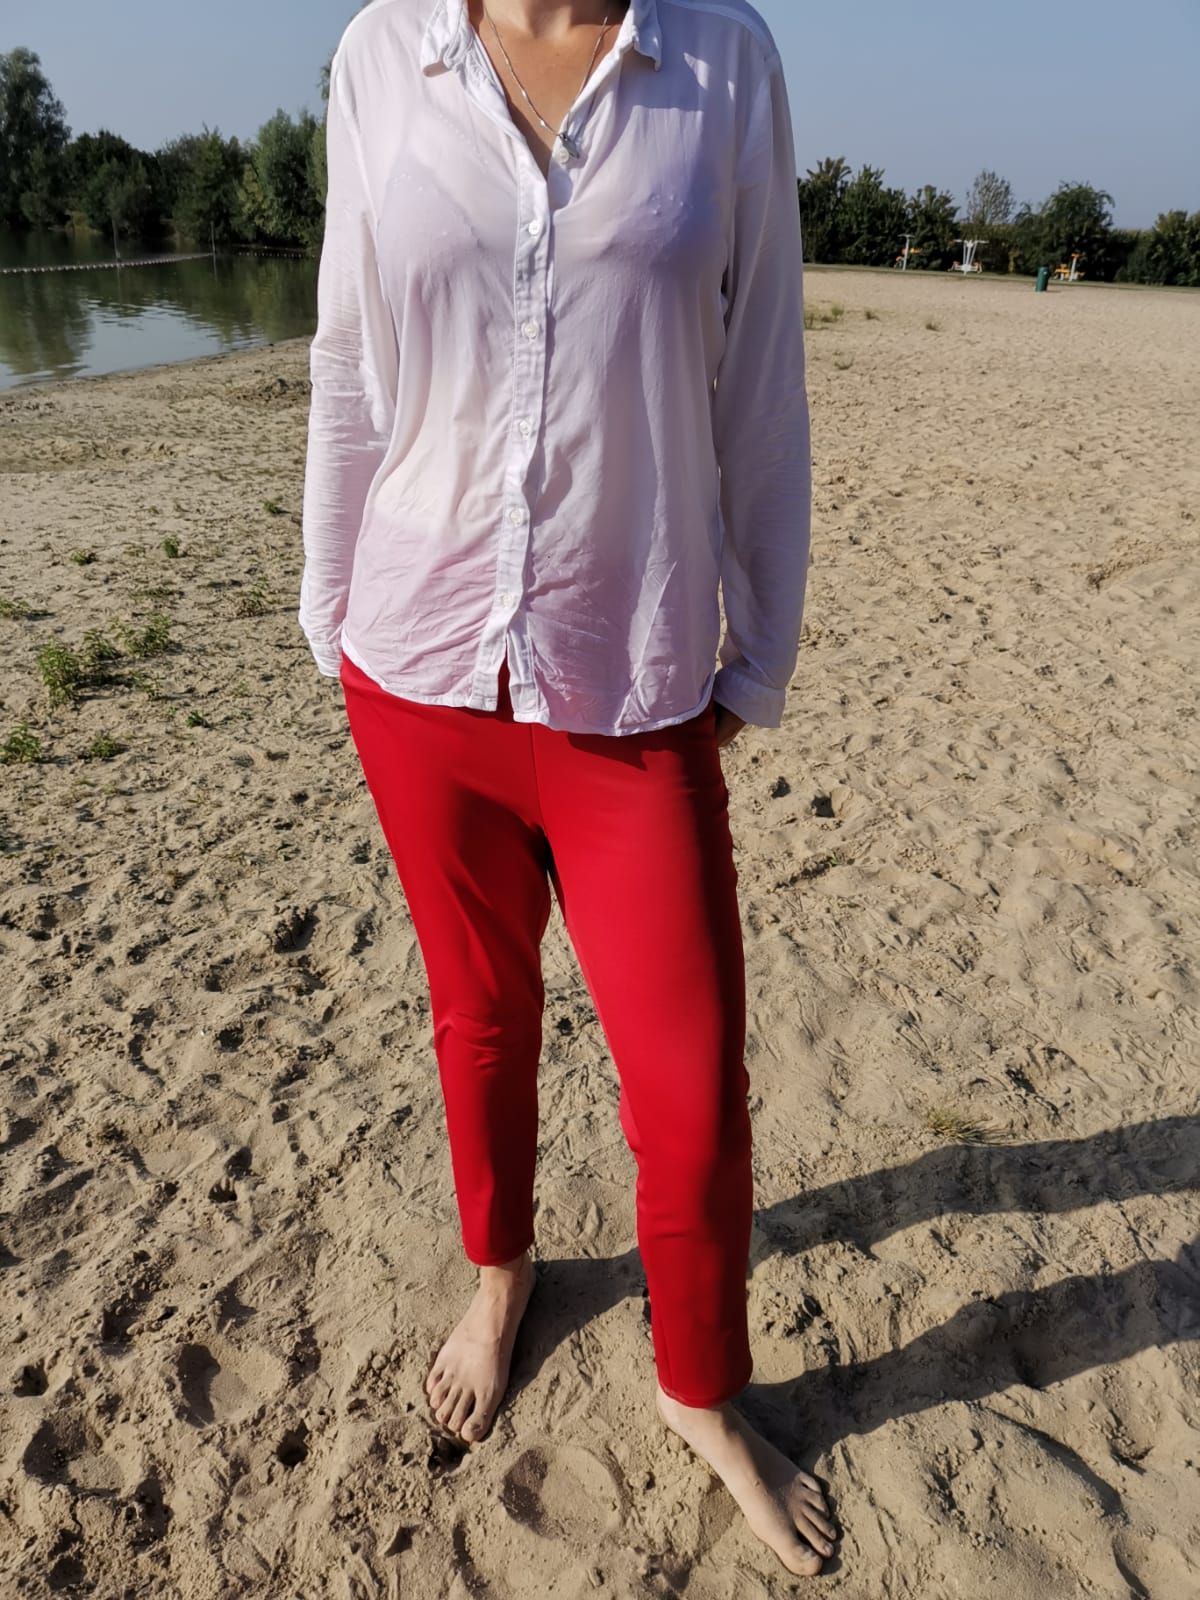 Roter Anzug am See